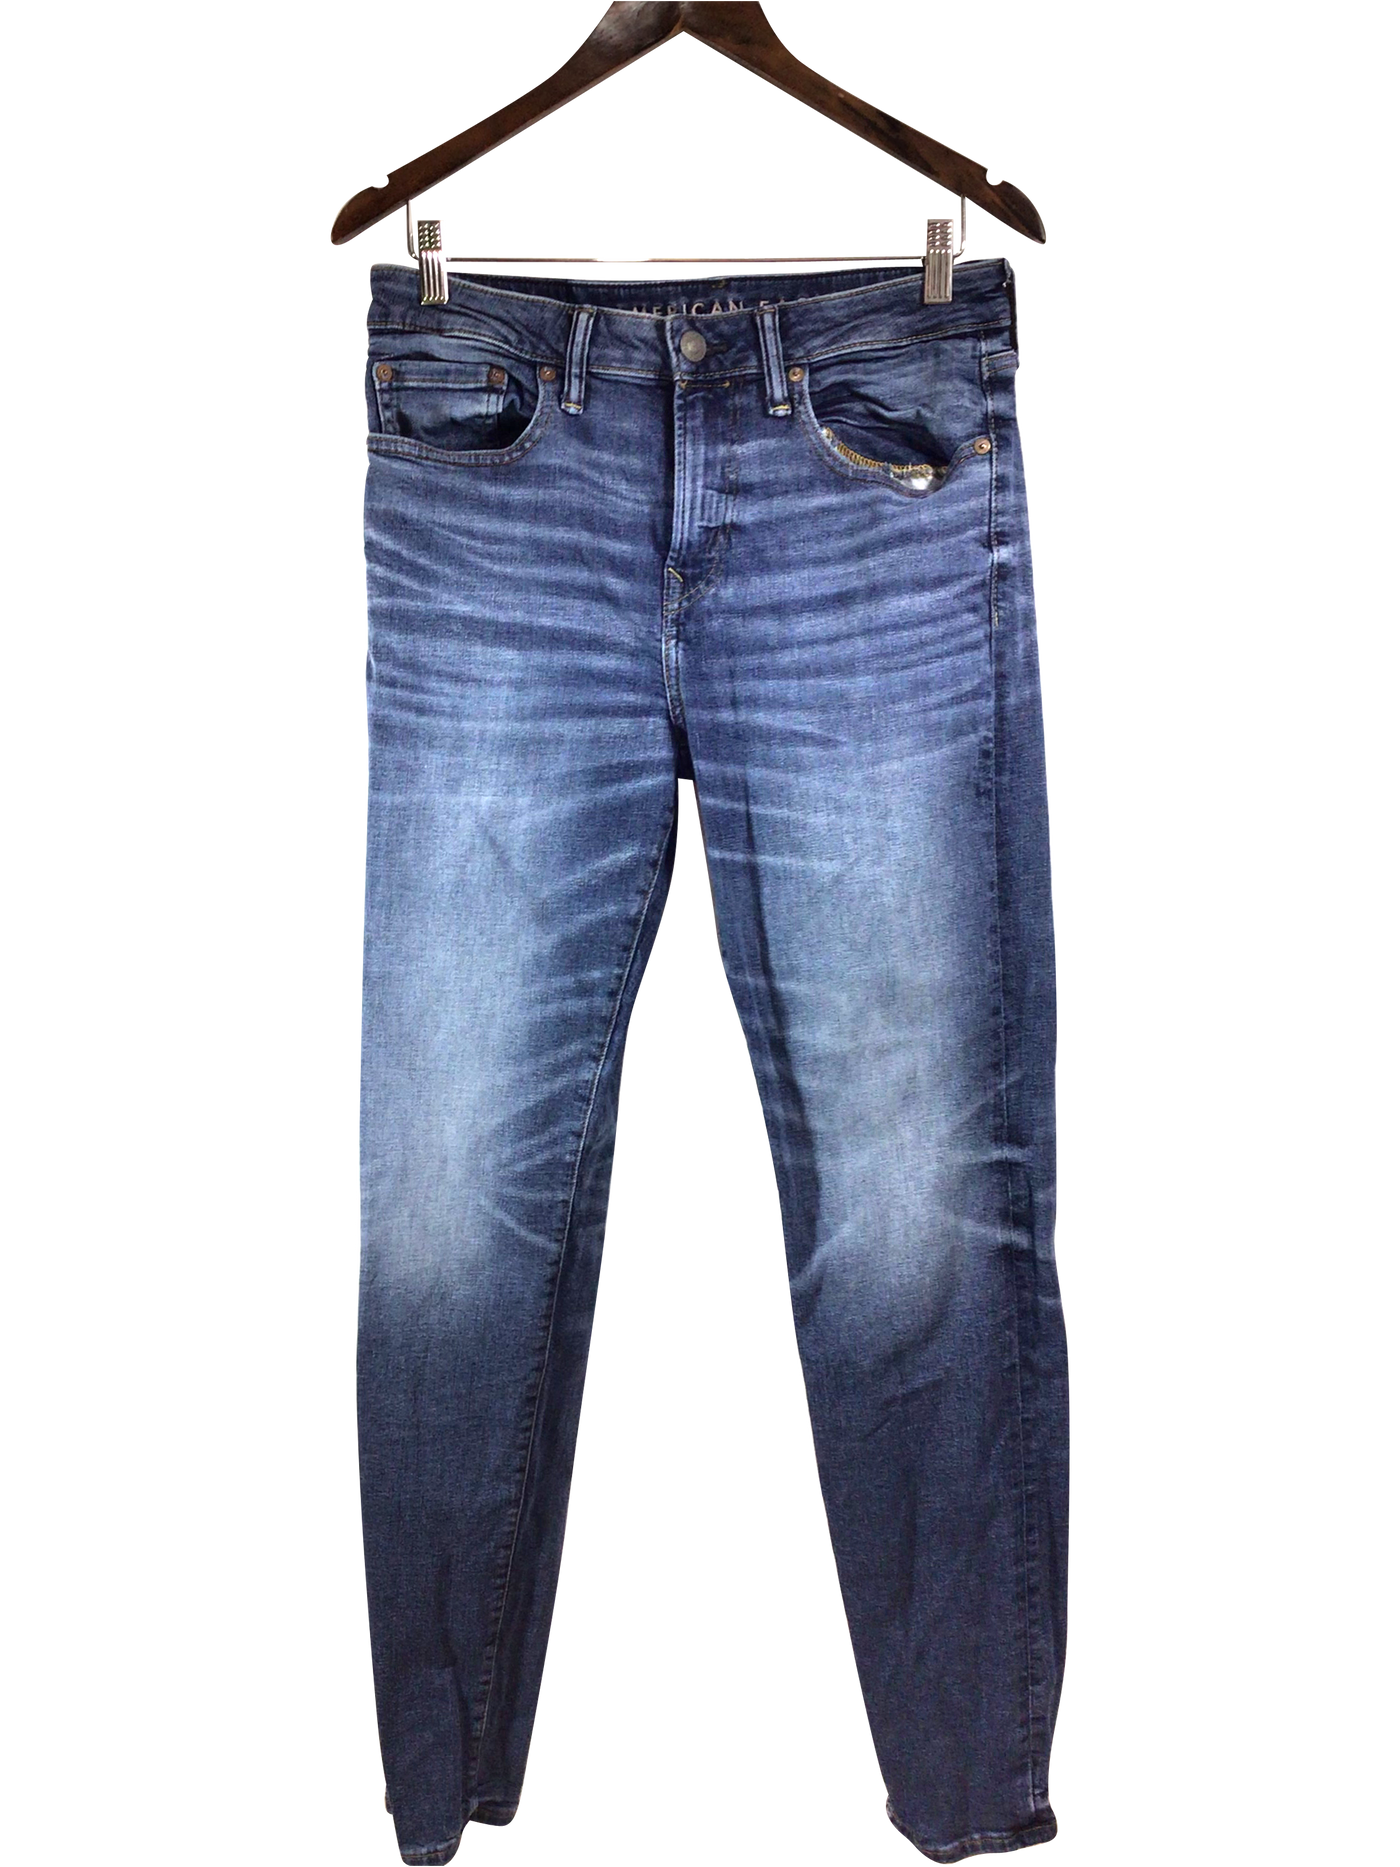 AMERICAN EAGLE  Women Straight-Legged Jeans Regular fit in Blue - Size 30x34 | 14.9 $ KOOP